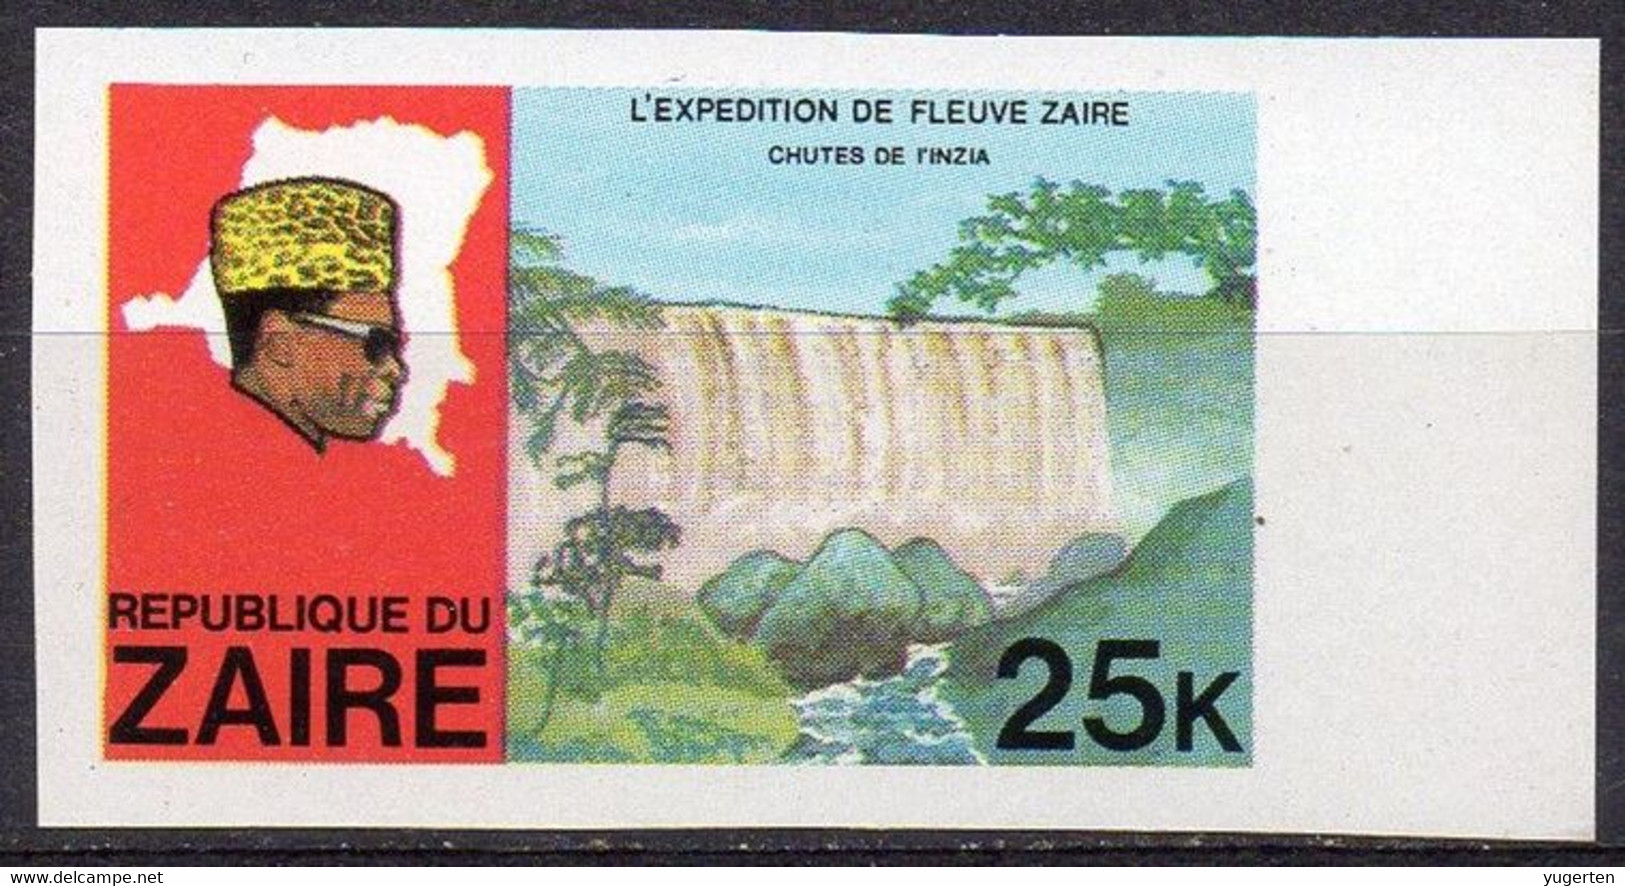 ZAÏRE 1979 - 1v - MNH - IMPERF - River Expedition - Inzia Falls - Rivierexpeditie - Inzia-watervallen Water - Wasser Eau - Eau